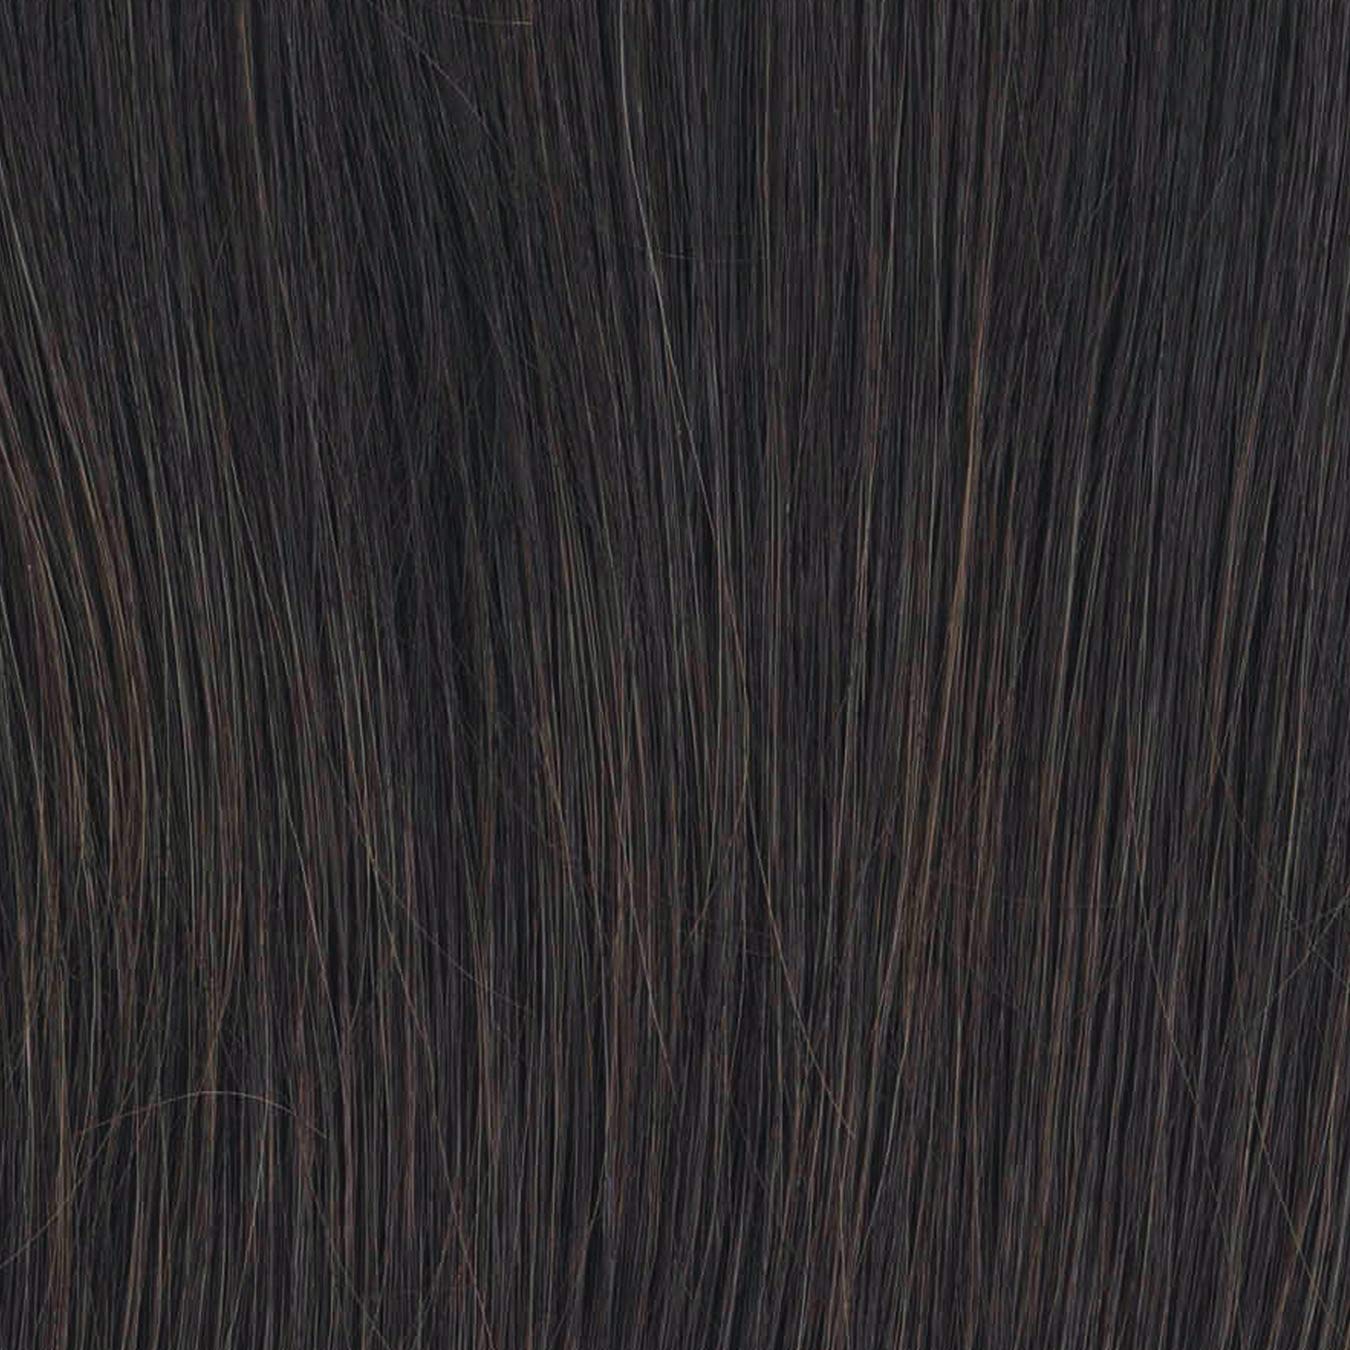 Bella Vida Wavy Layered Wig By Raquel Welch - VIP Extensions